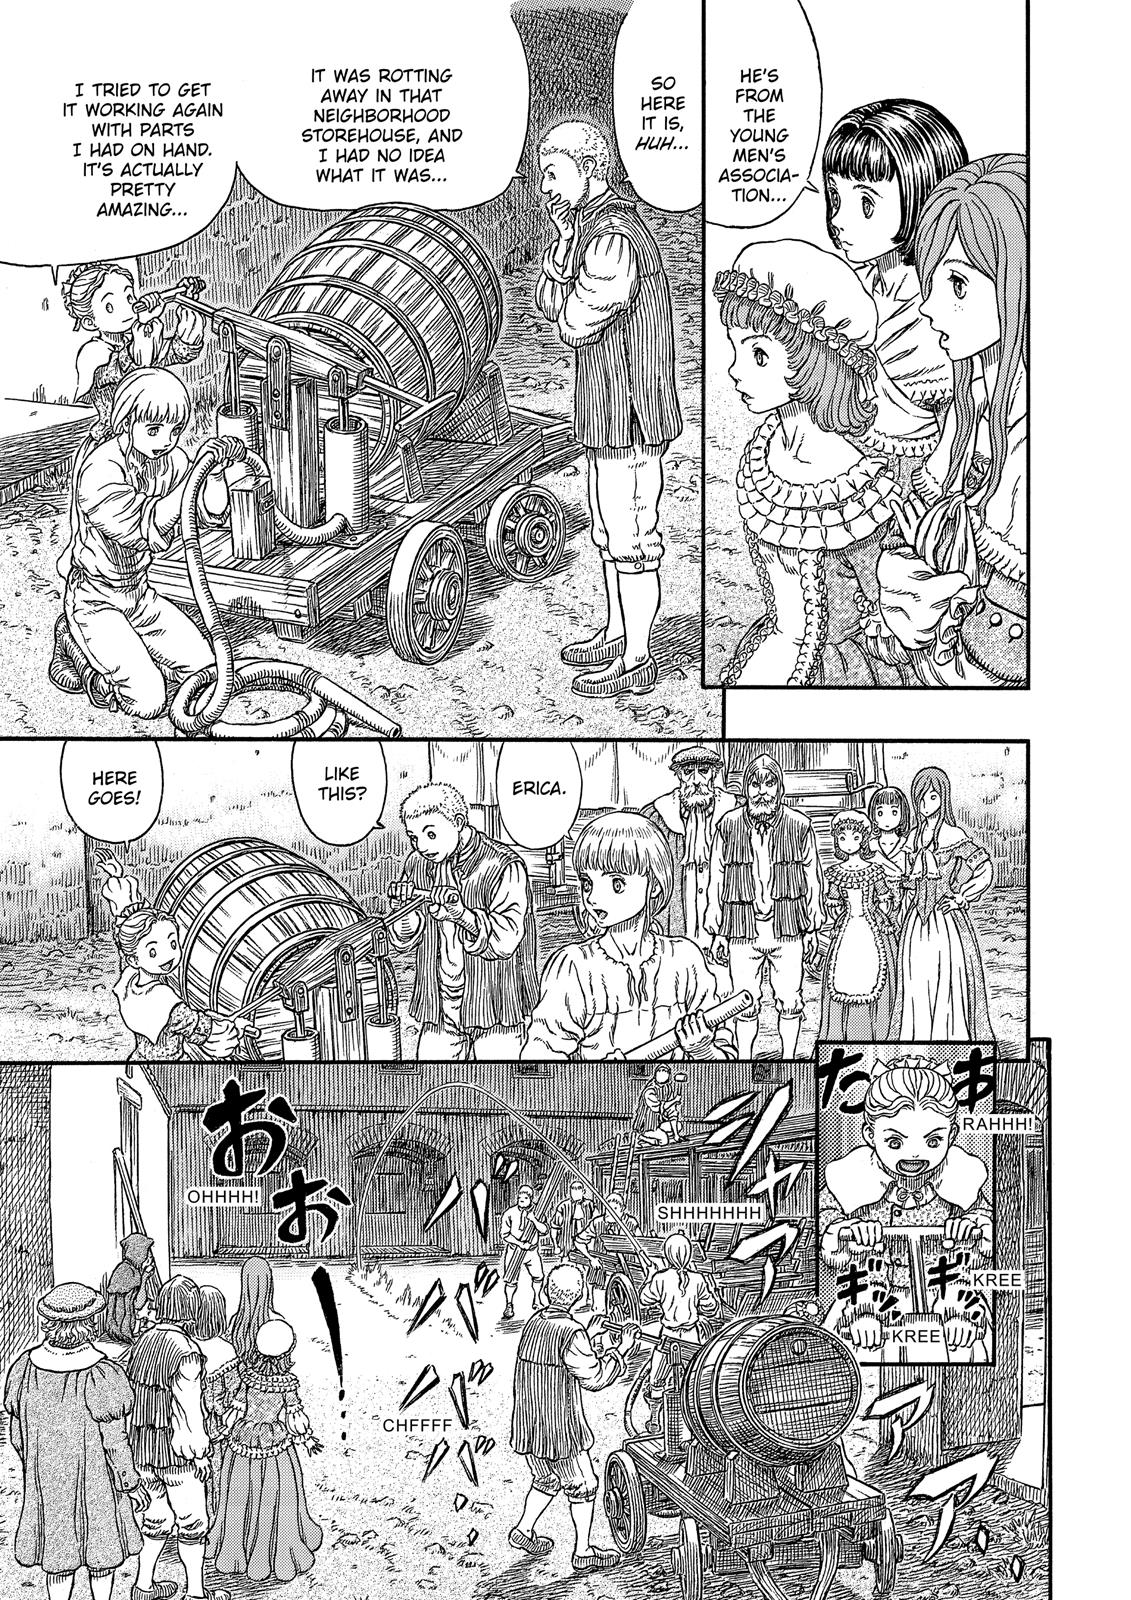 Berserk Manga Chapter 338 image 06